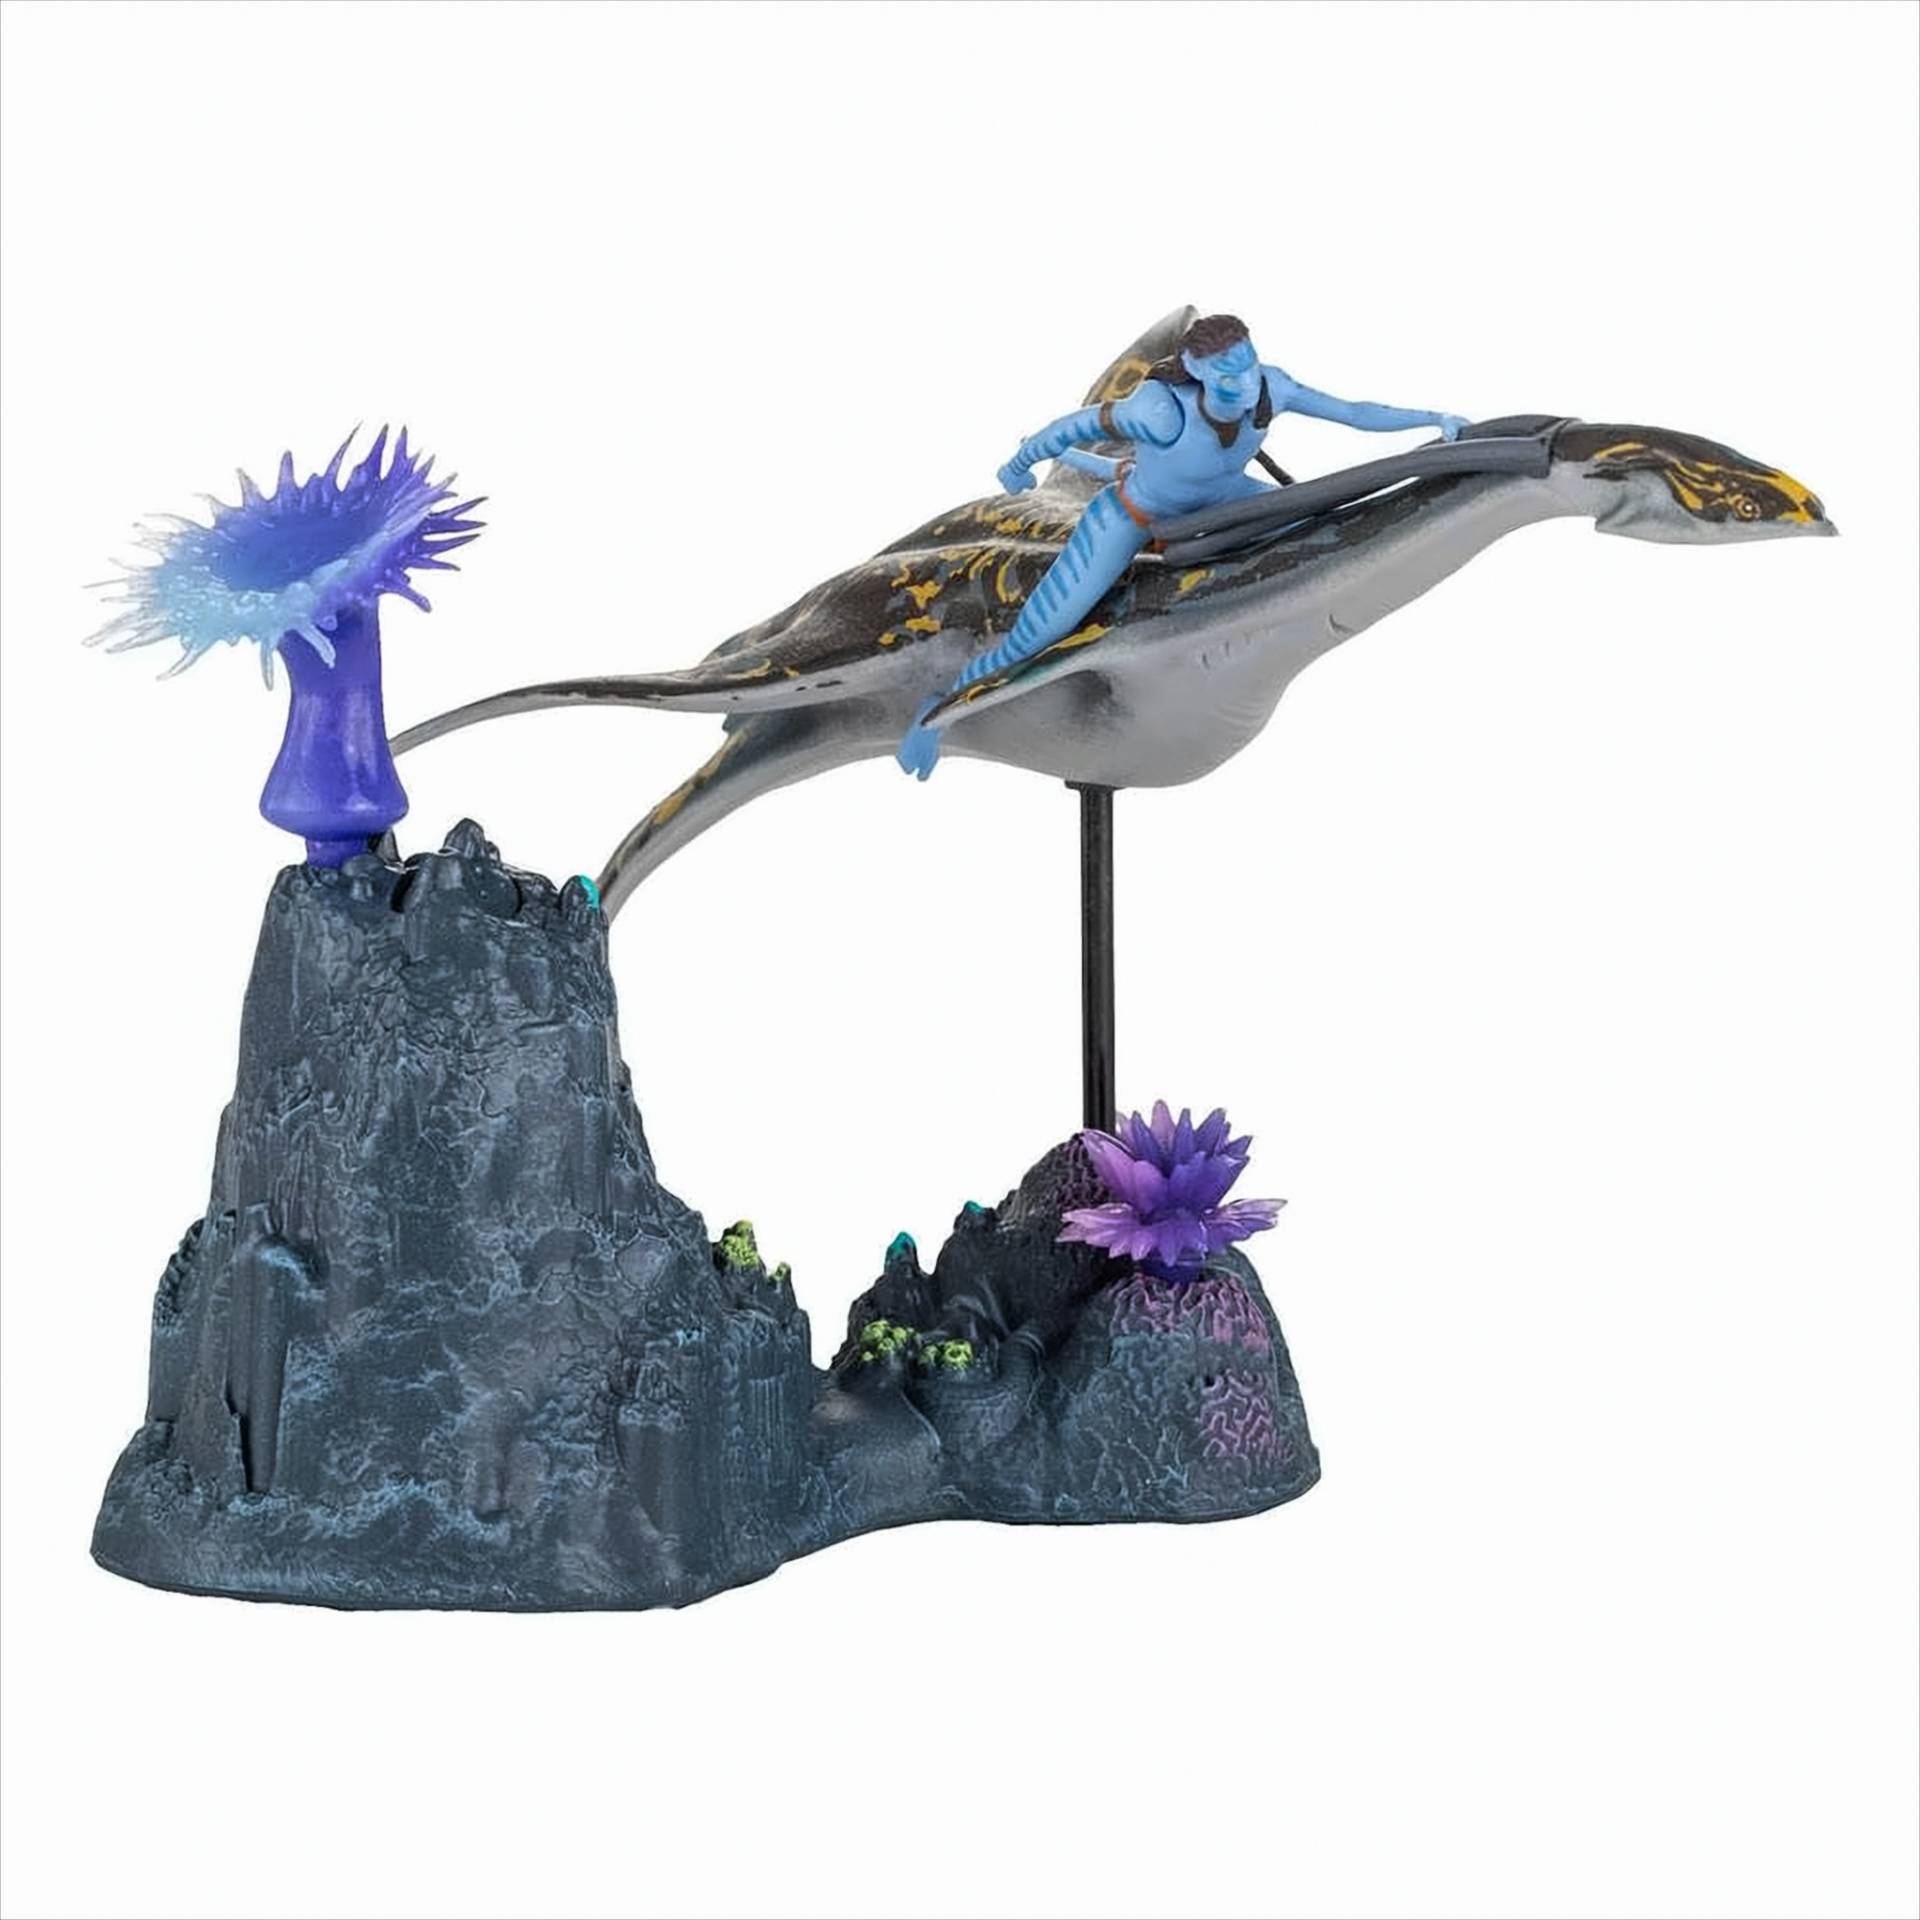 Avatar The Way of Water - Neteyam & Ilu von McFarlane Toys